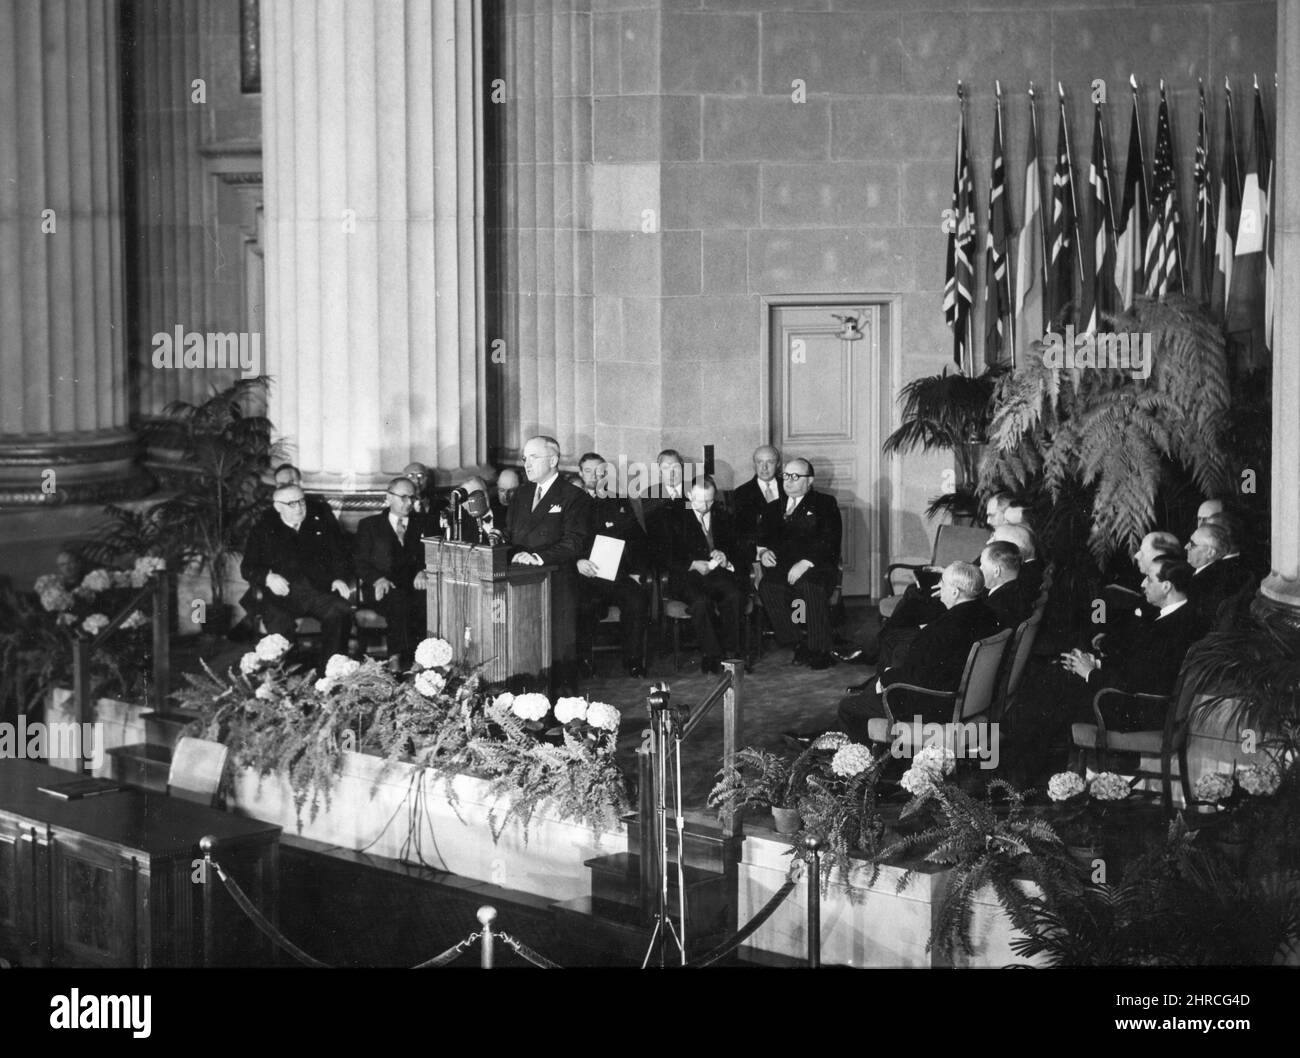 El Presidente Harry S. Truman se dirige a la reunión para la firma del Tratado del Atlántico Norte en el Auditorio del Departamento de Estado. Washington, DC, 4 de abril de 1949. Departamento de Estado. Foto de stock